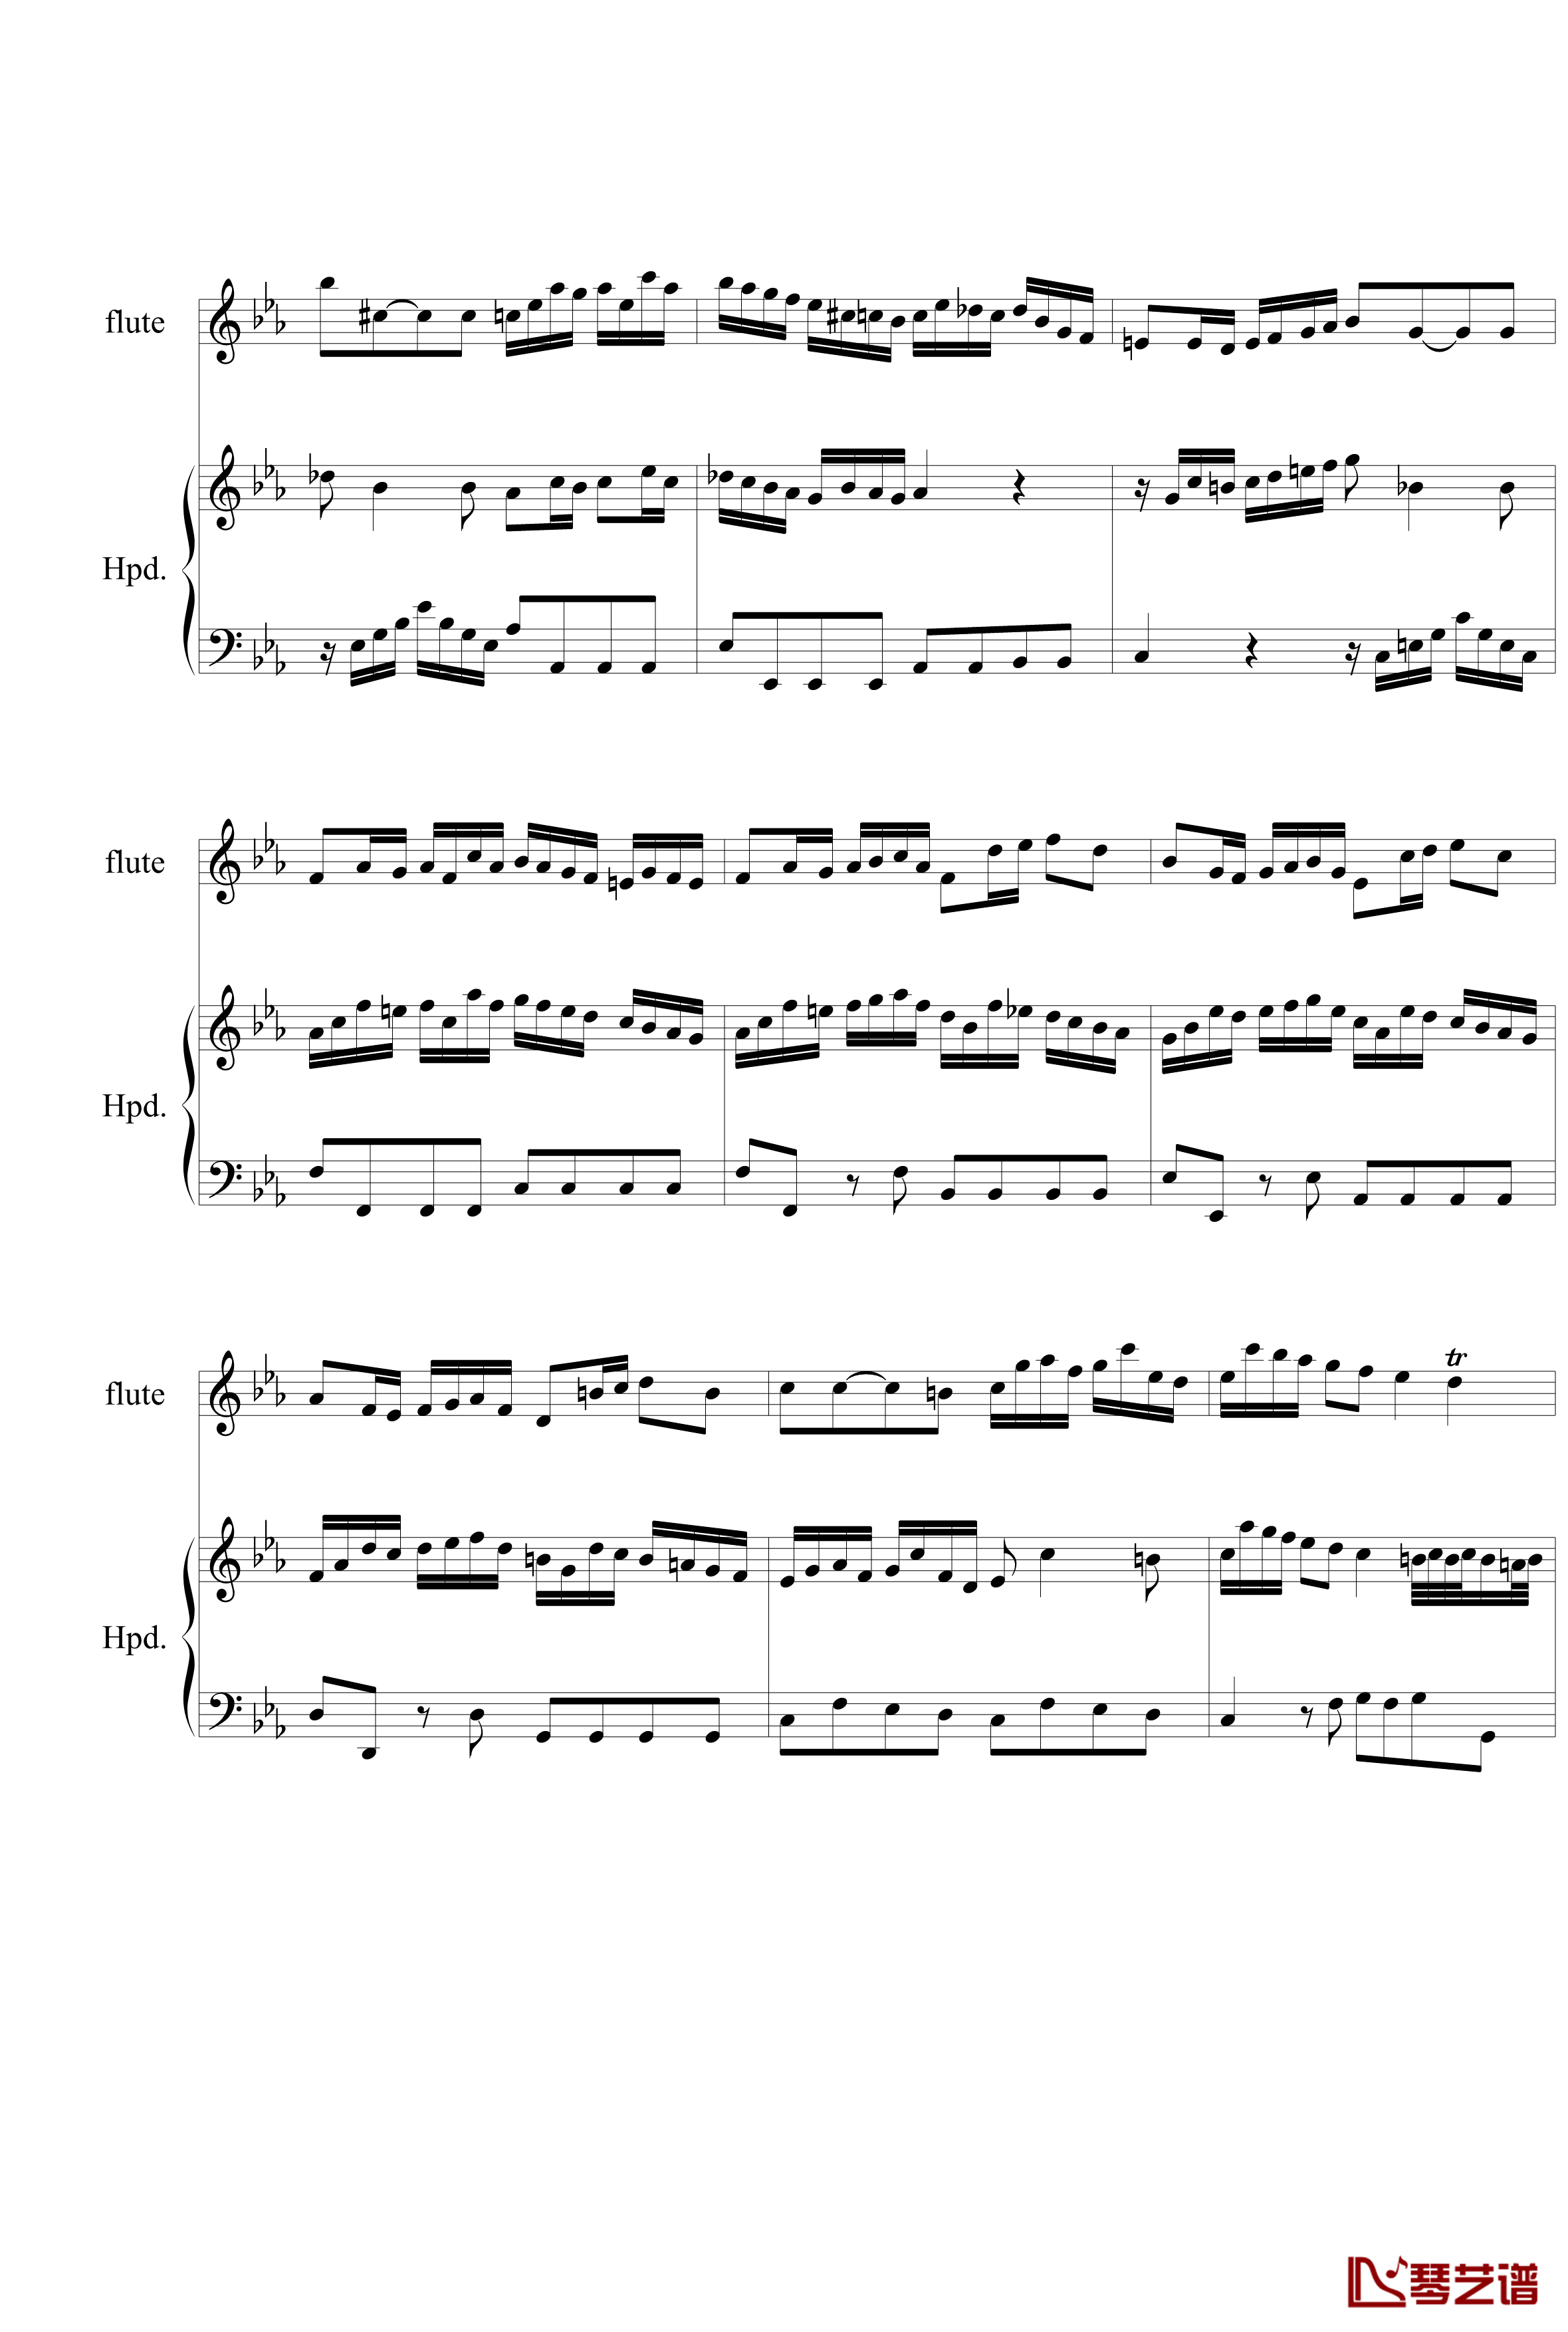 羽管键琴协奏曲BWV1031第一乐章钢琴谱-巴赫-P.E.Bach5